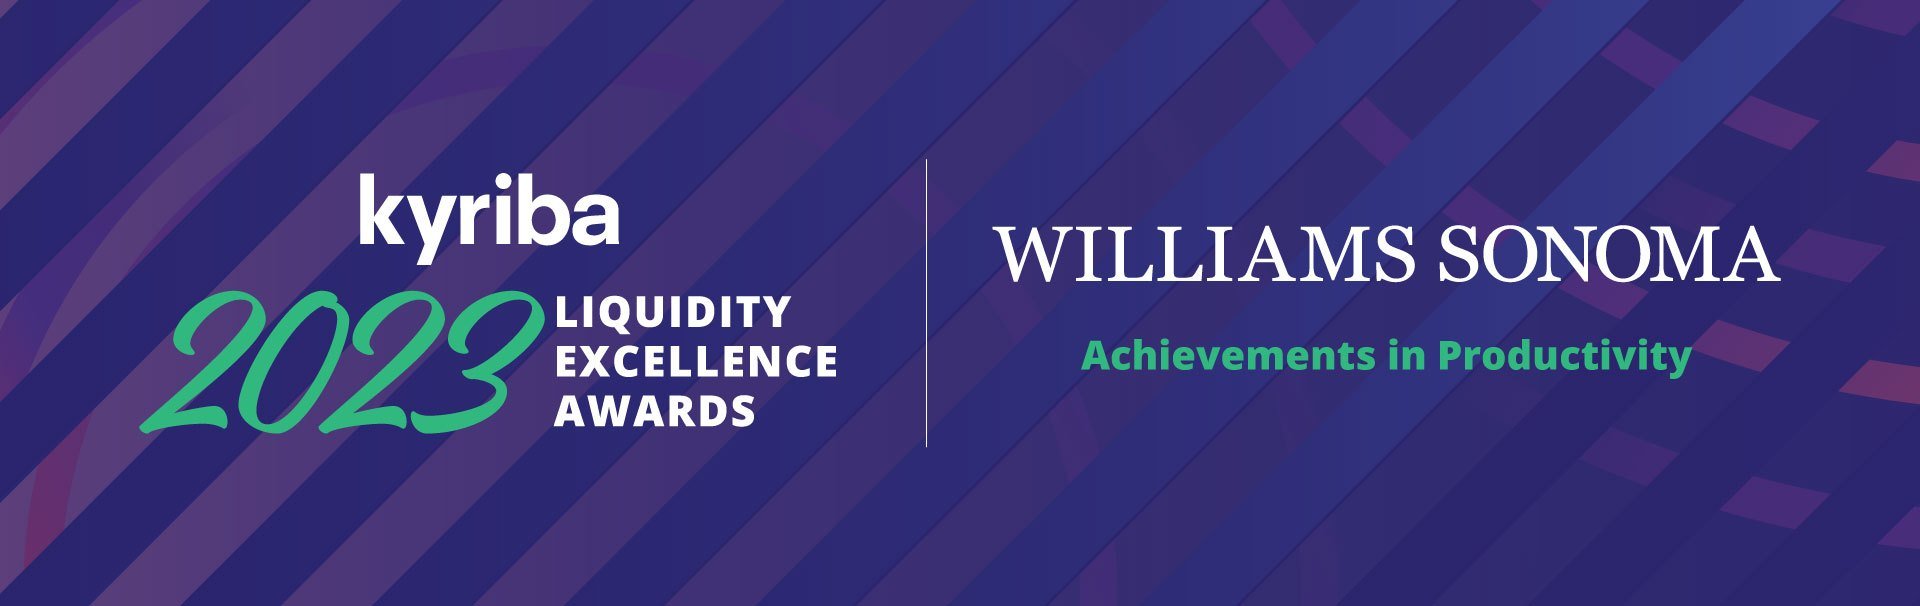 Williams-Sonoma - SEA Award